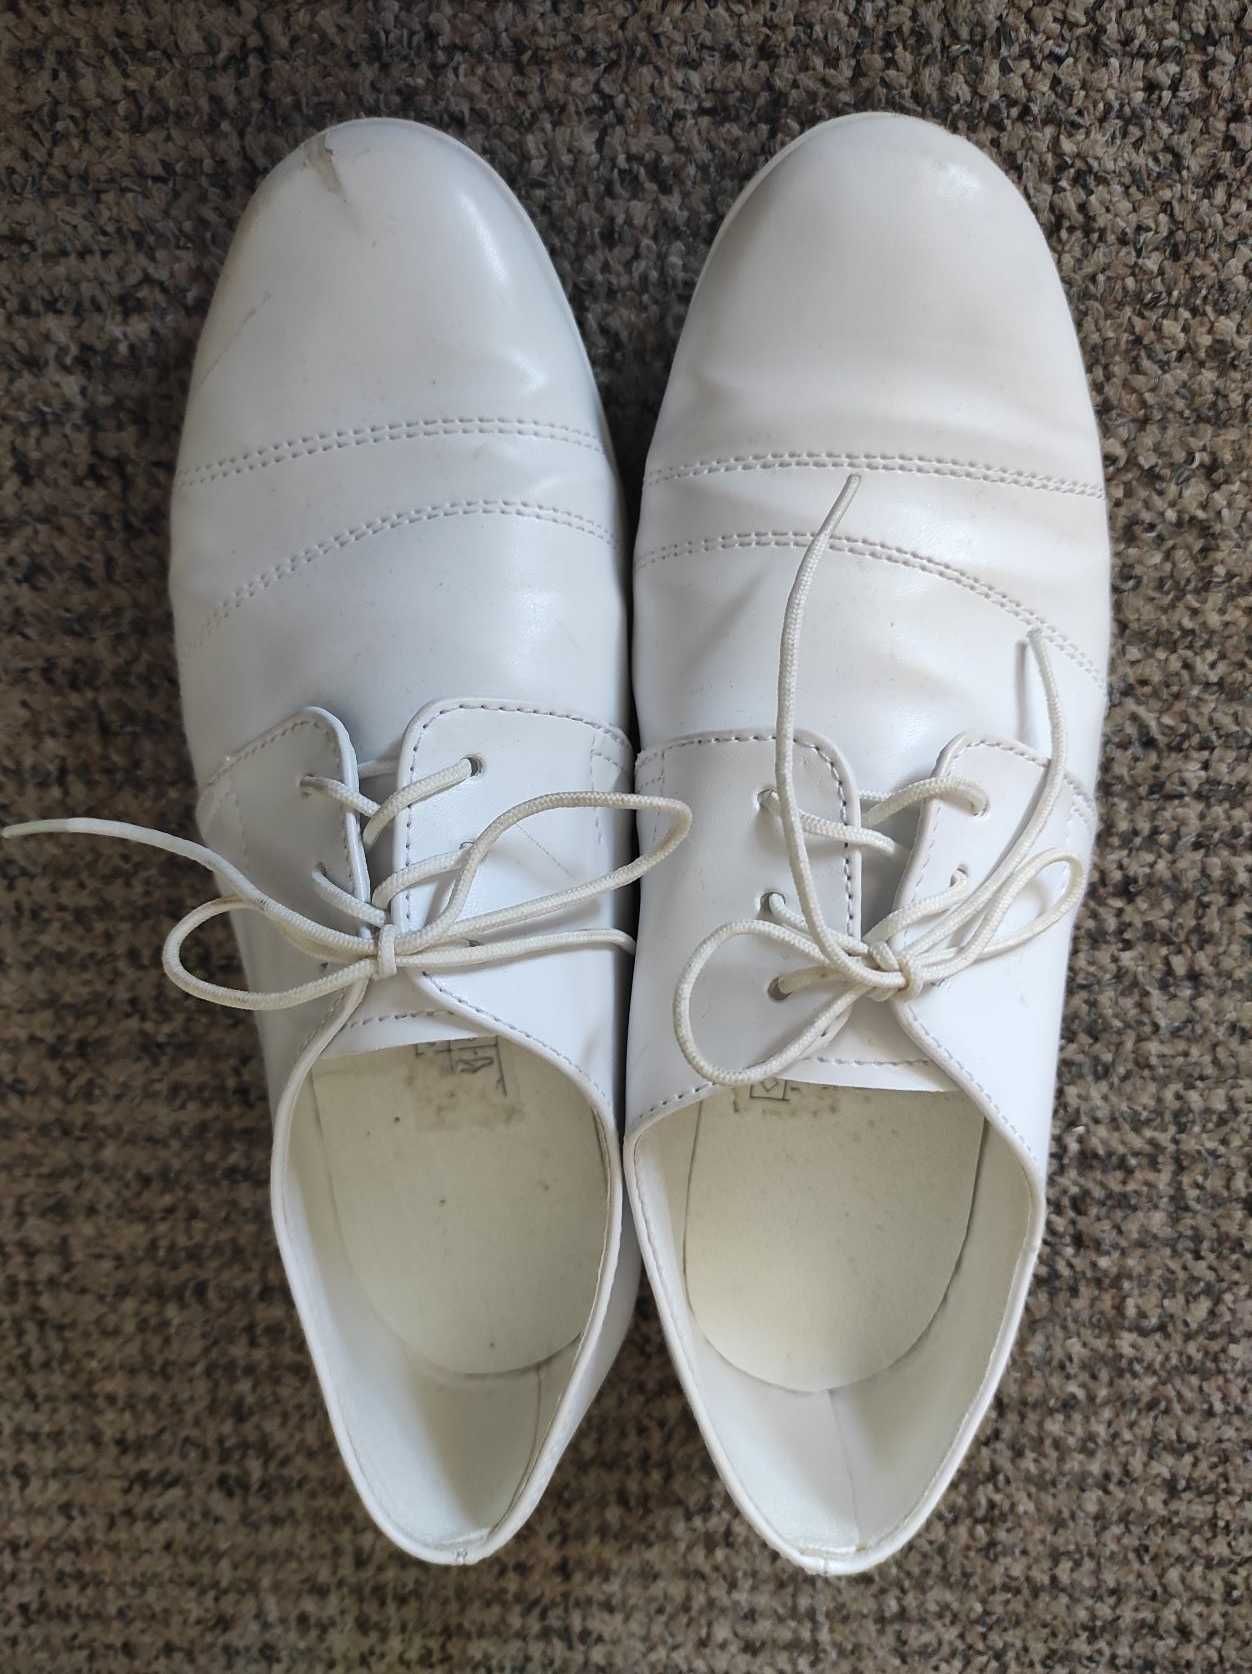 Buty białe, komunijne rozm. 34